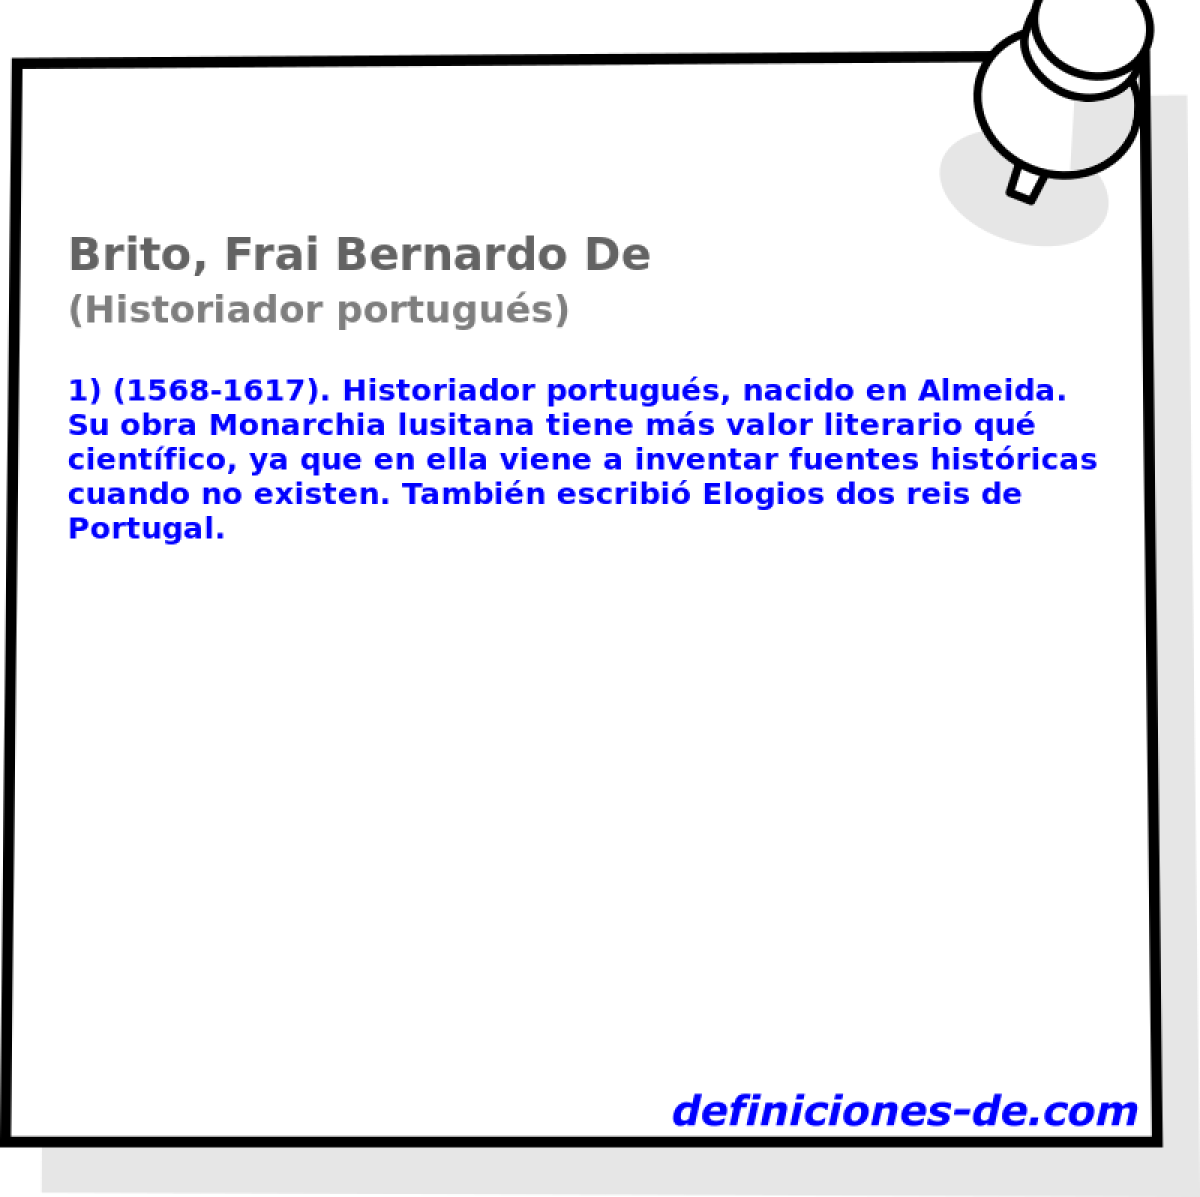 Brito, Frai Bernardo De (Historiador portugus)